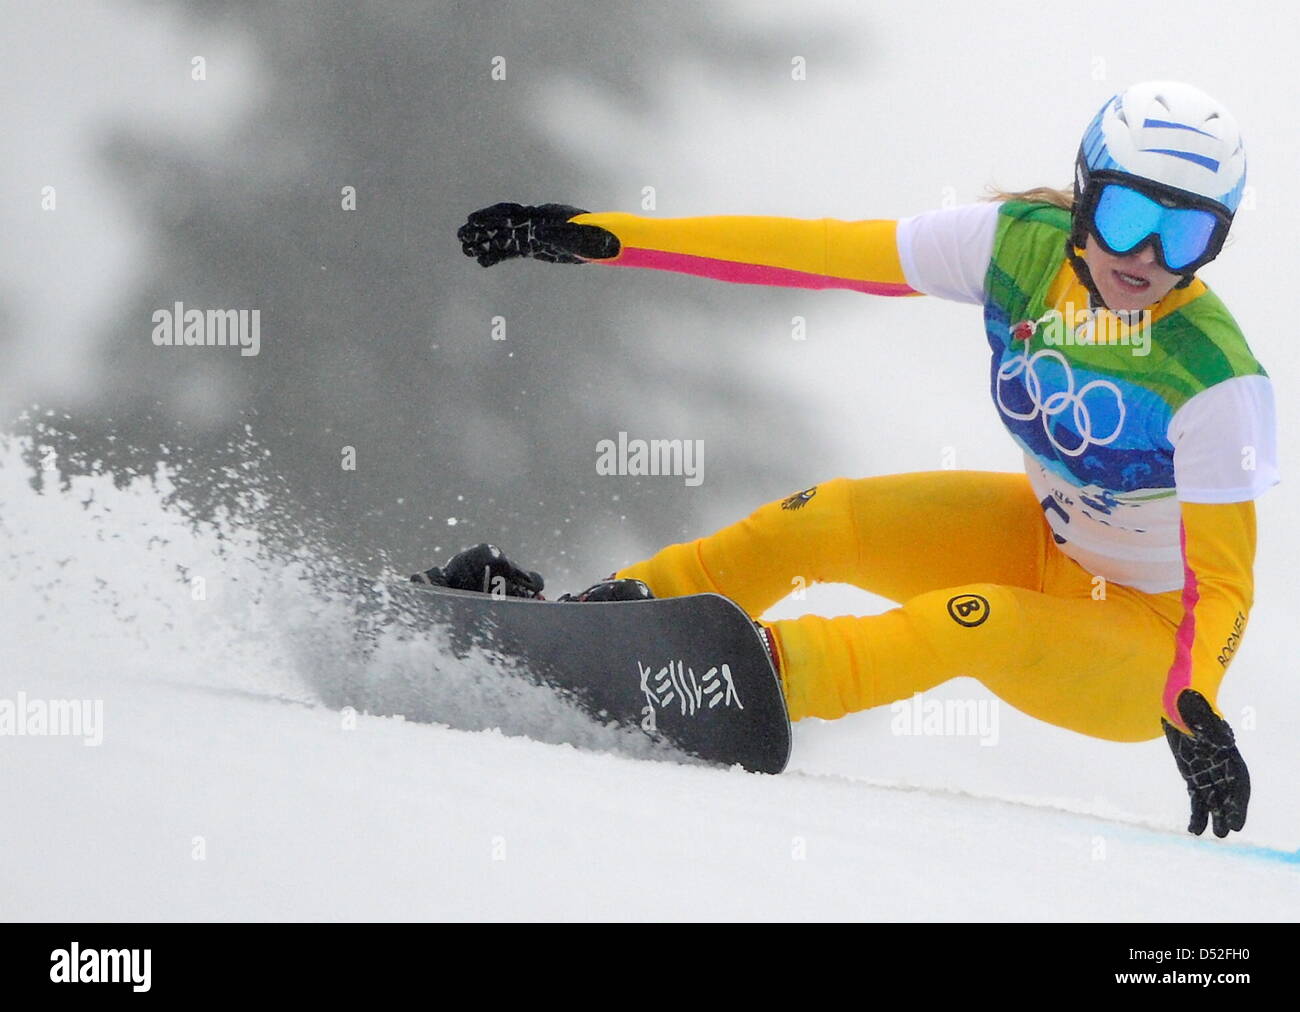 Amelie Kober di Germania compete in ladies' Snow Board parallelo Slalom Gigante run di qualificazione dei Giochi Olimpici Invernali di Cypress Mountain, Canada, 26 febbraio 2010. Foto: Andrew Gombert +++(c) dpa - Bildfunk+++ Foto Stock